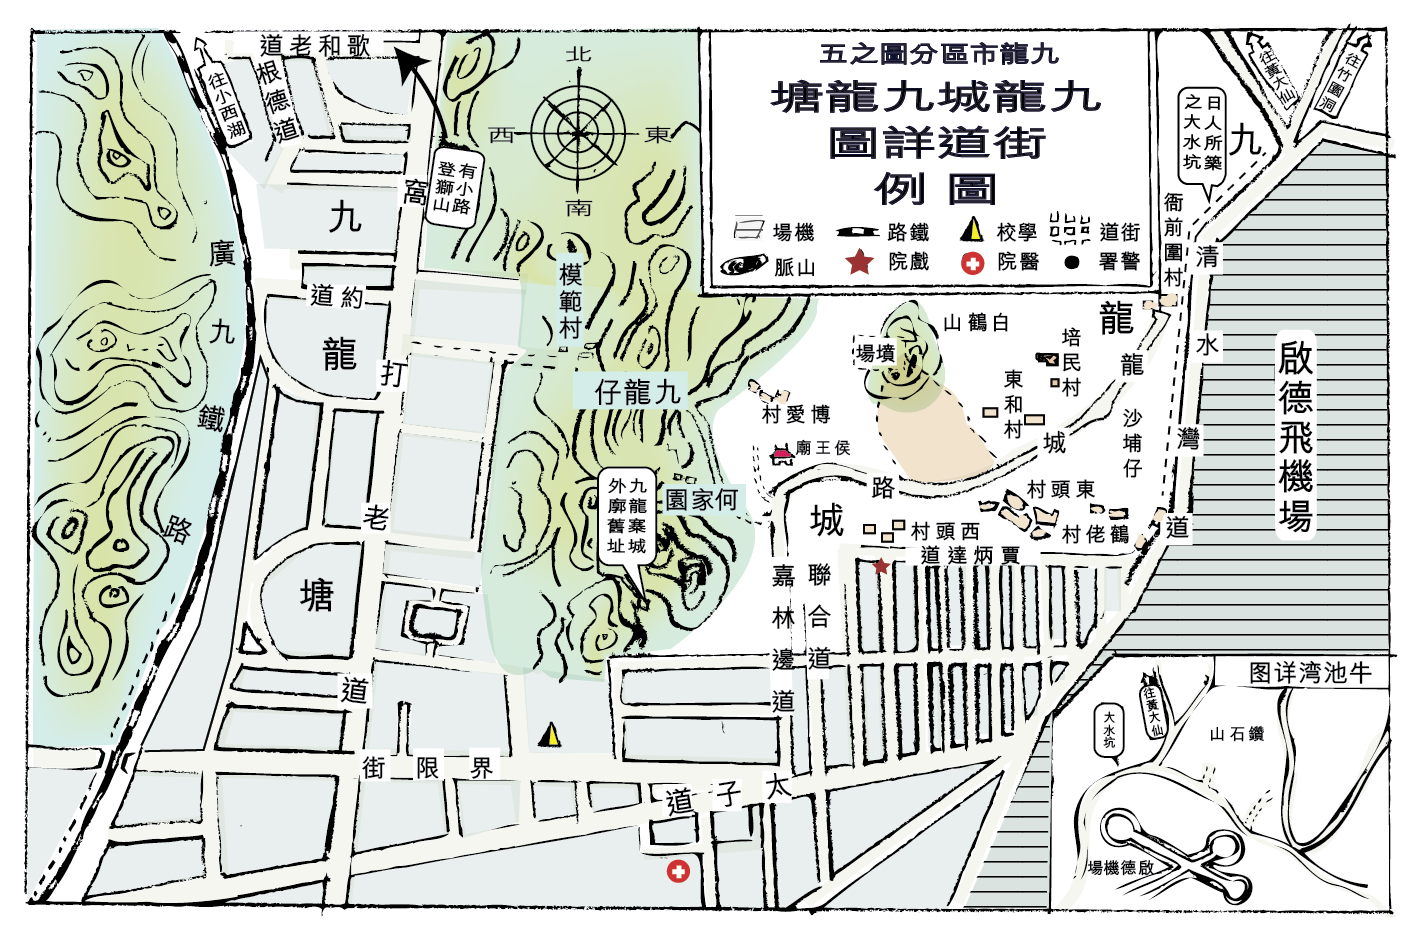 1953 啟德機場原址及附近環境 （手繪地圖，參考：香港年鑑）